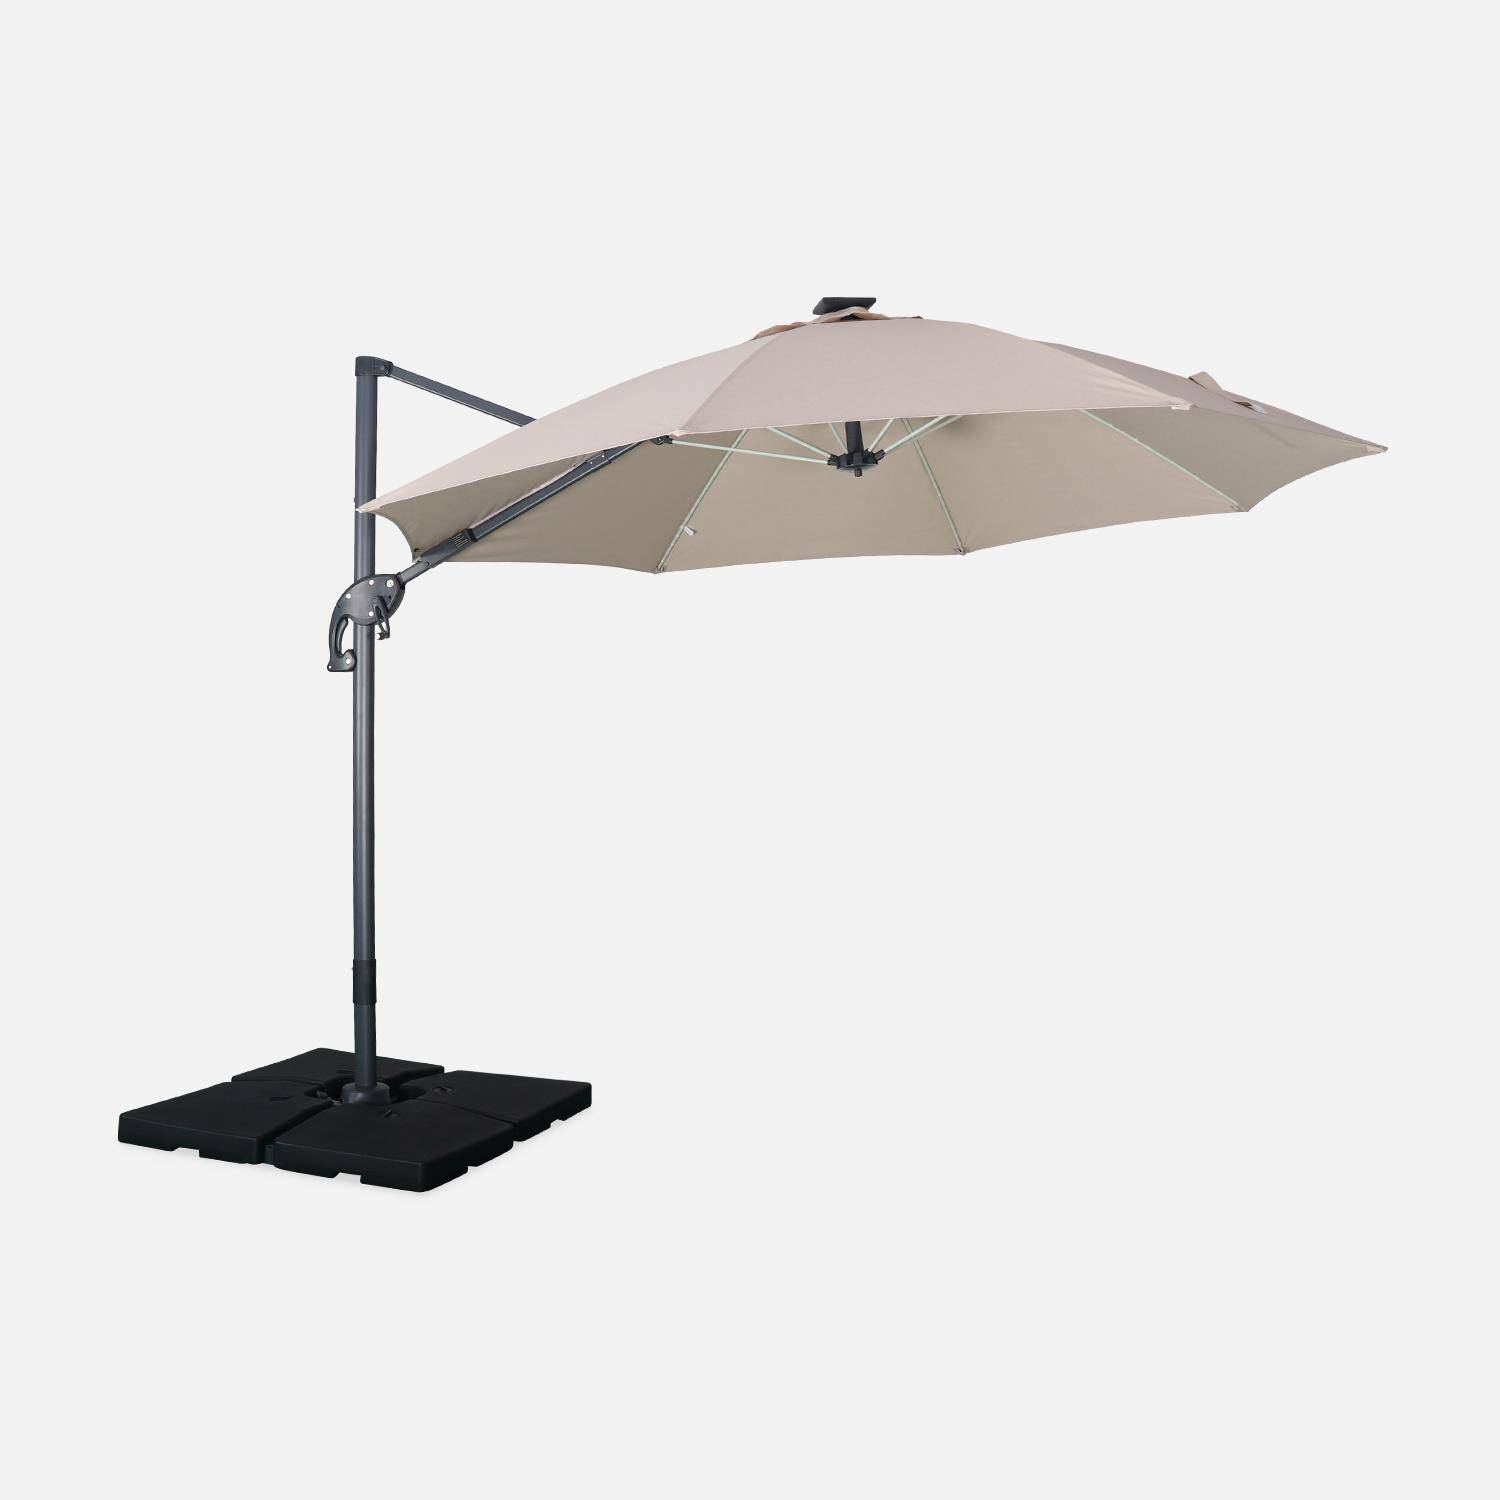 Ombrellone led tondo decentrato Ø300 cm - Dinard - Beige - ombrellone decentrato, basculante, ribaltabile e girevole 360°, stecche in fibra di vetro Photo1